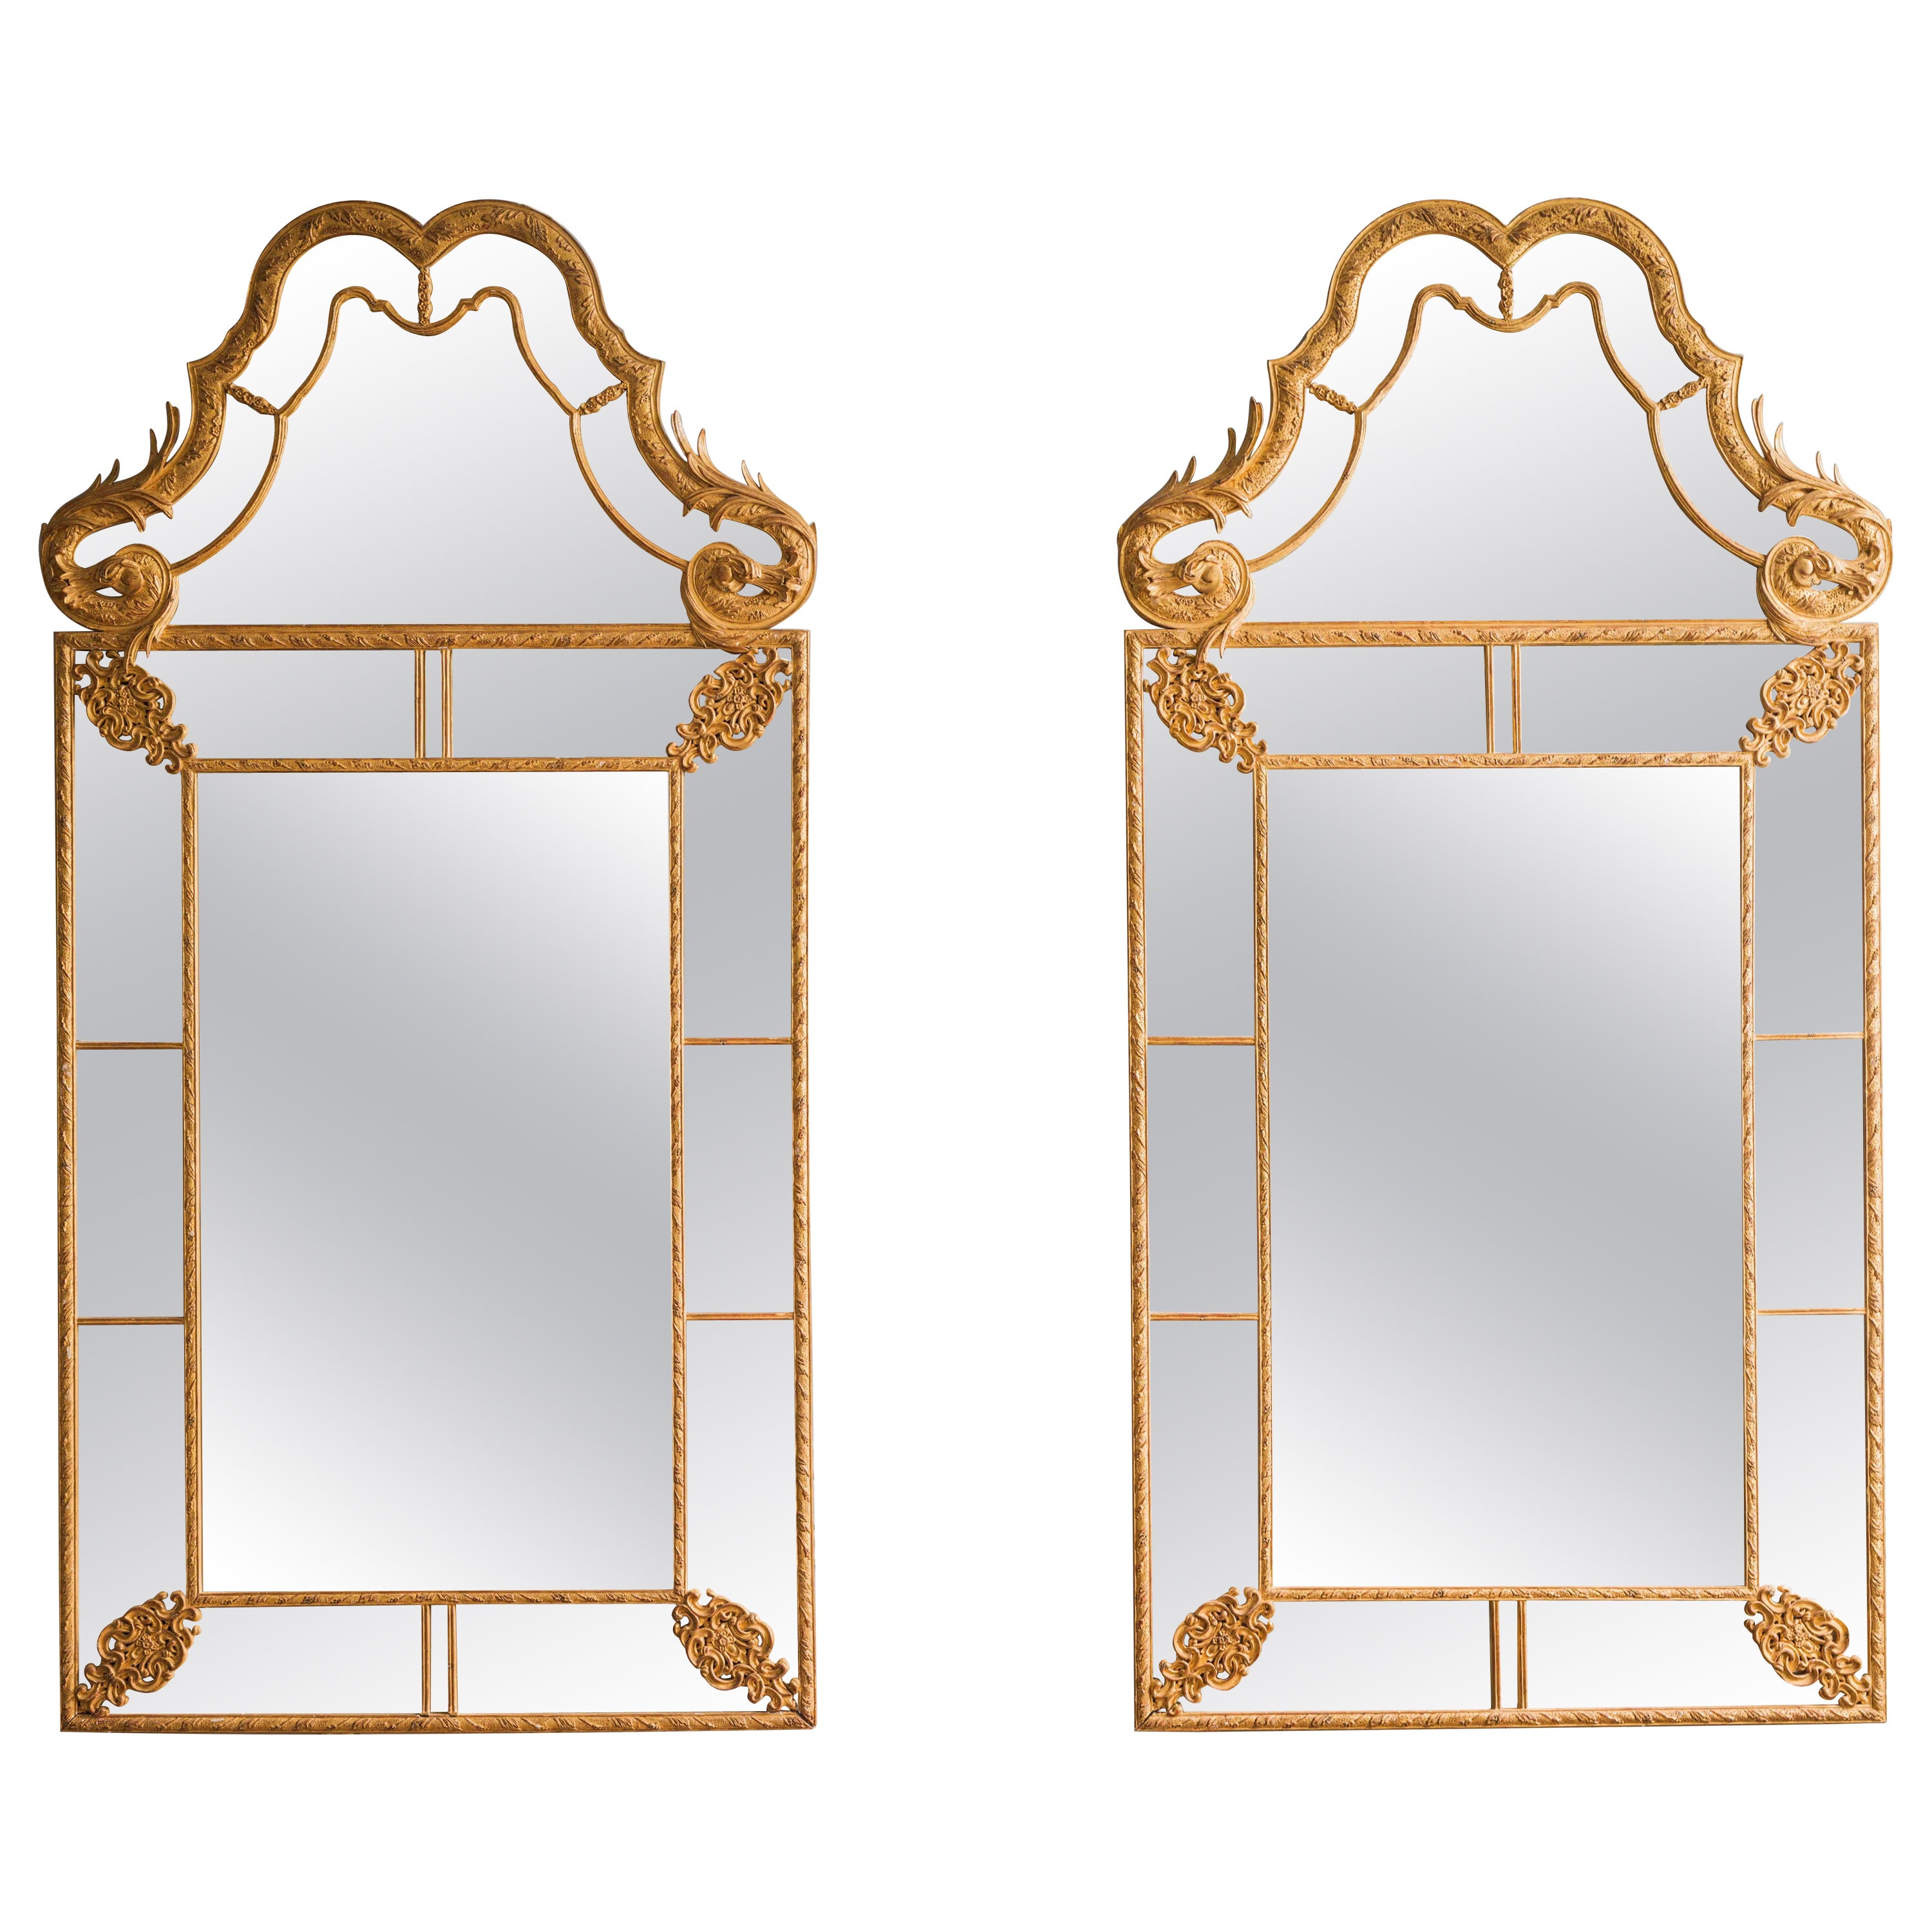 Spiegel im georgischen Stil